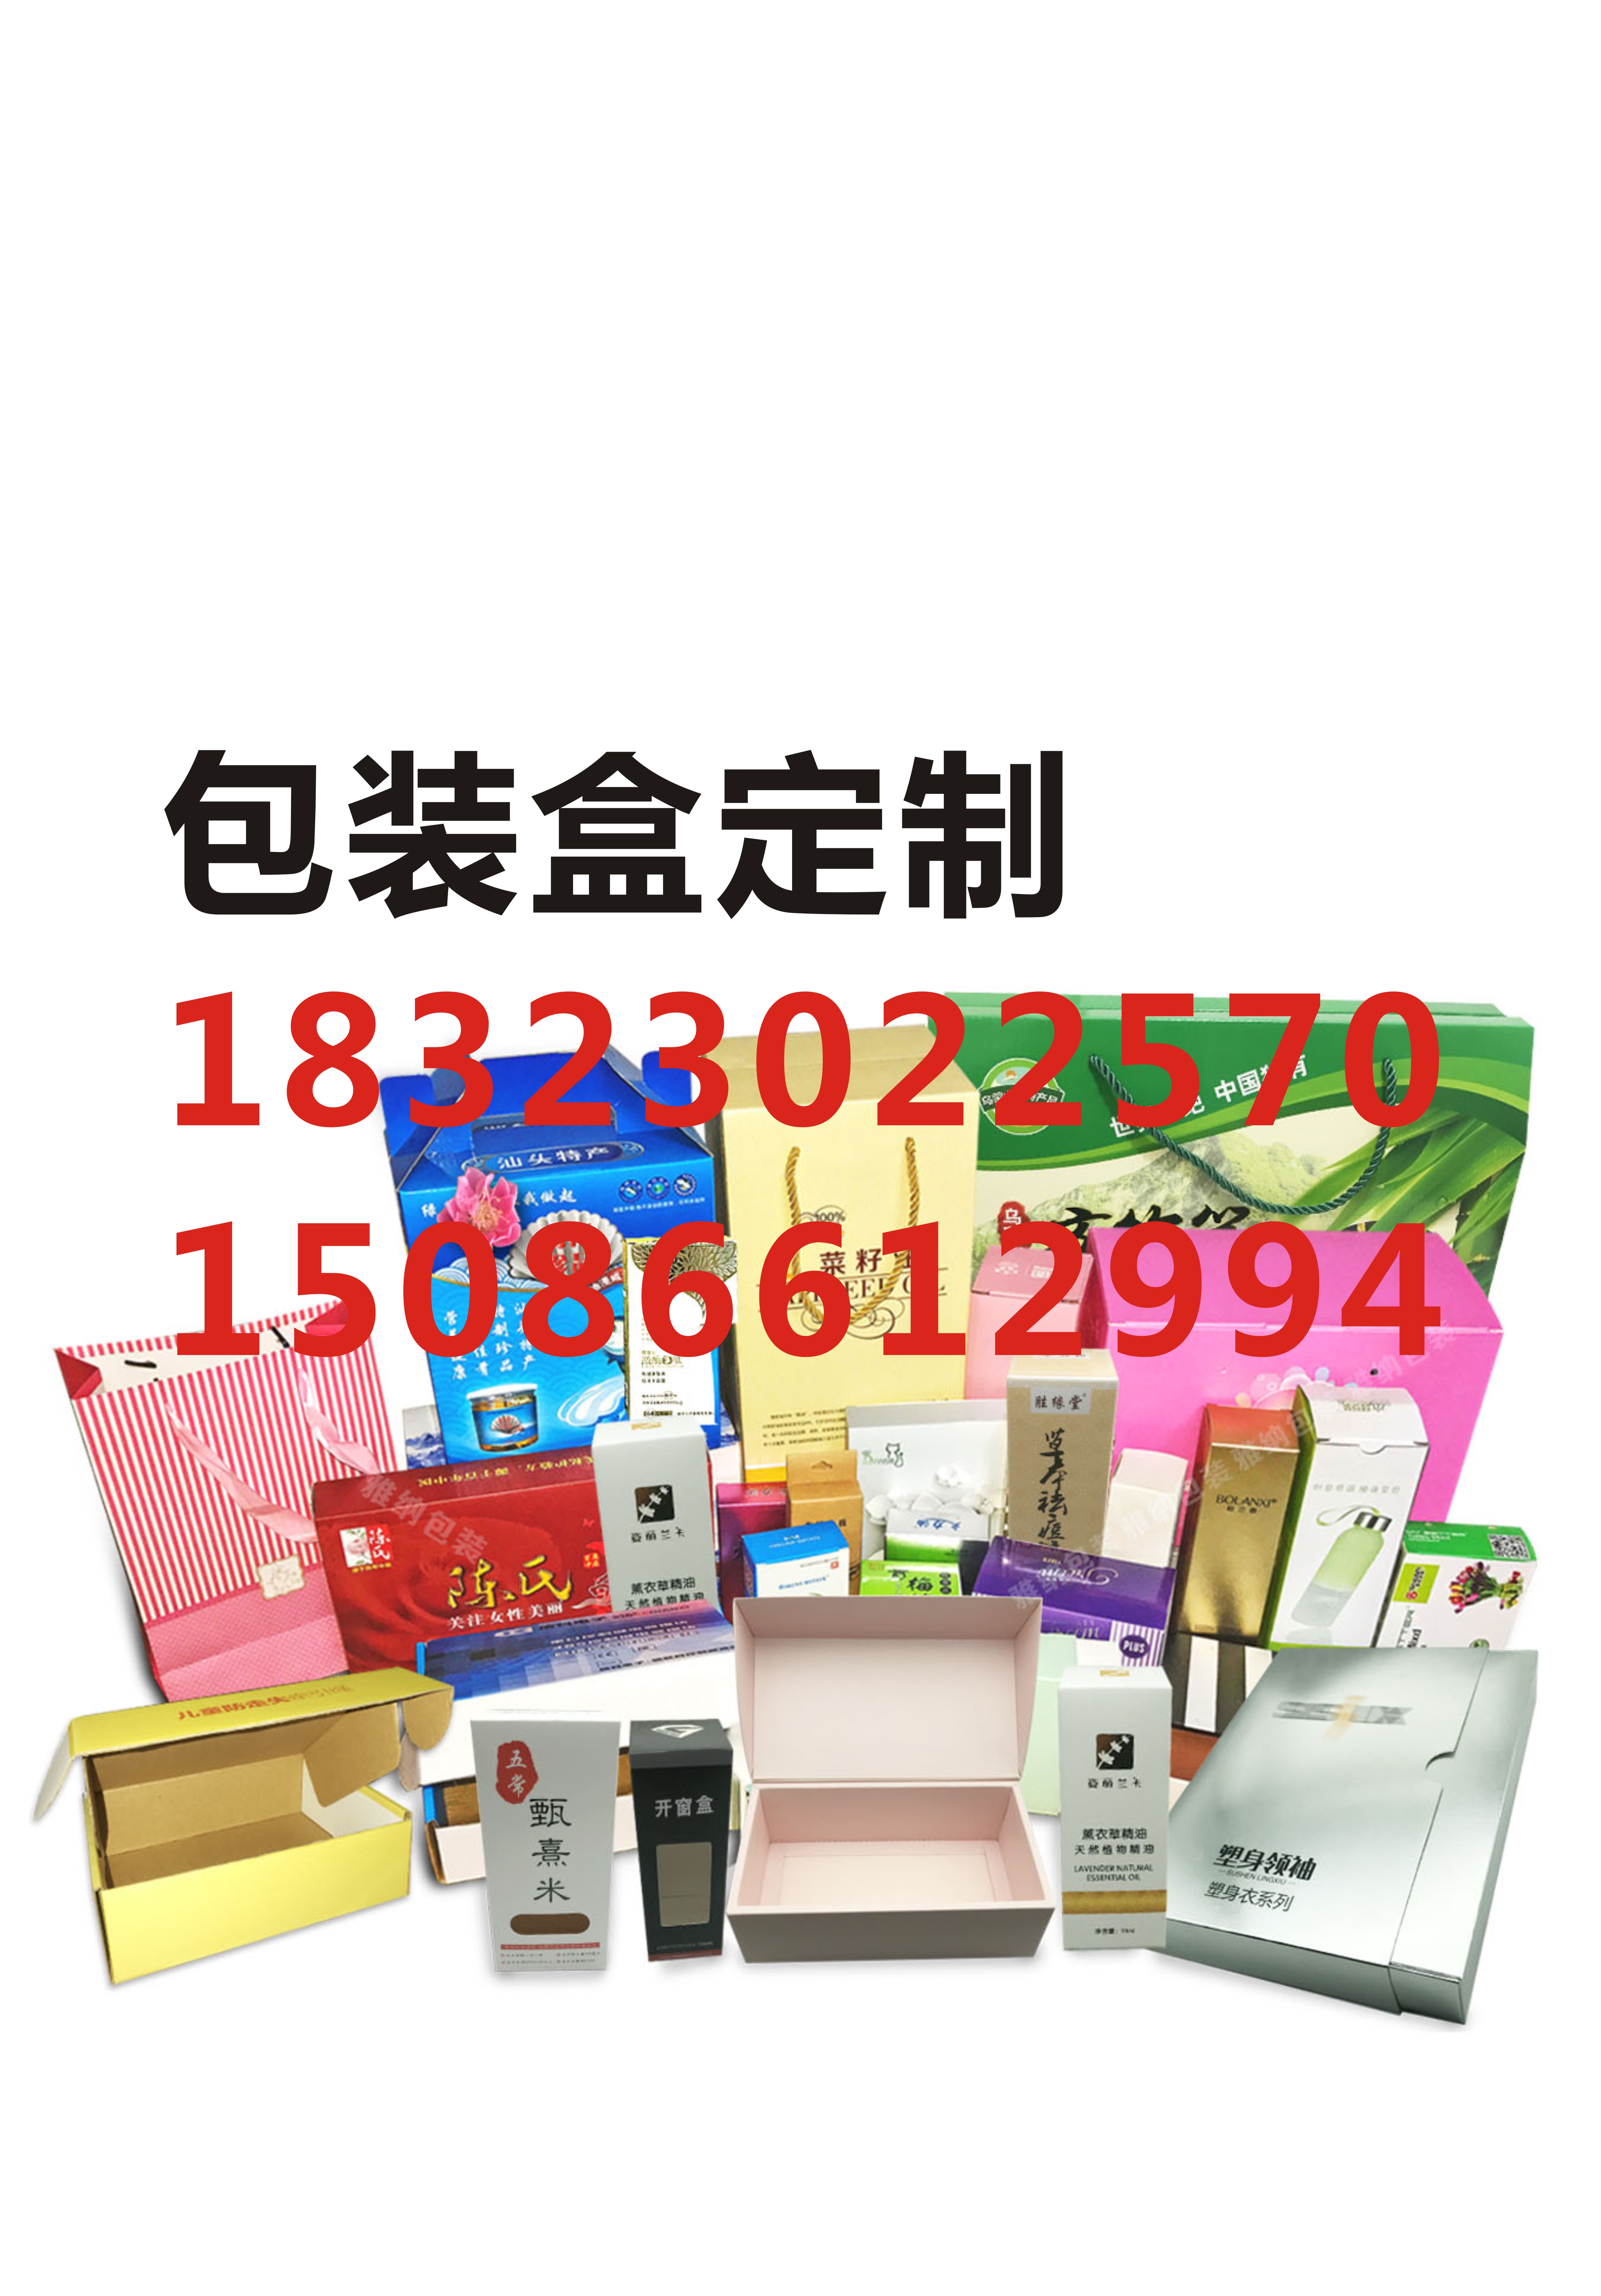 重庆茶叶包装盒 礼品盒定制 重庆包装供应商